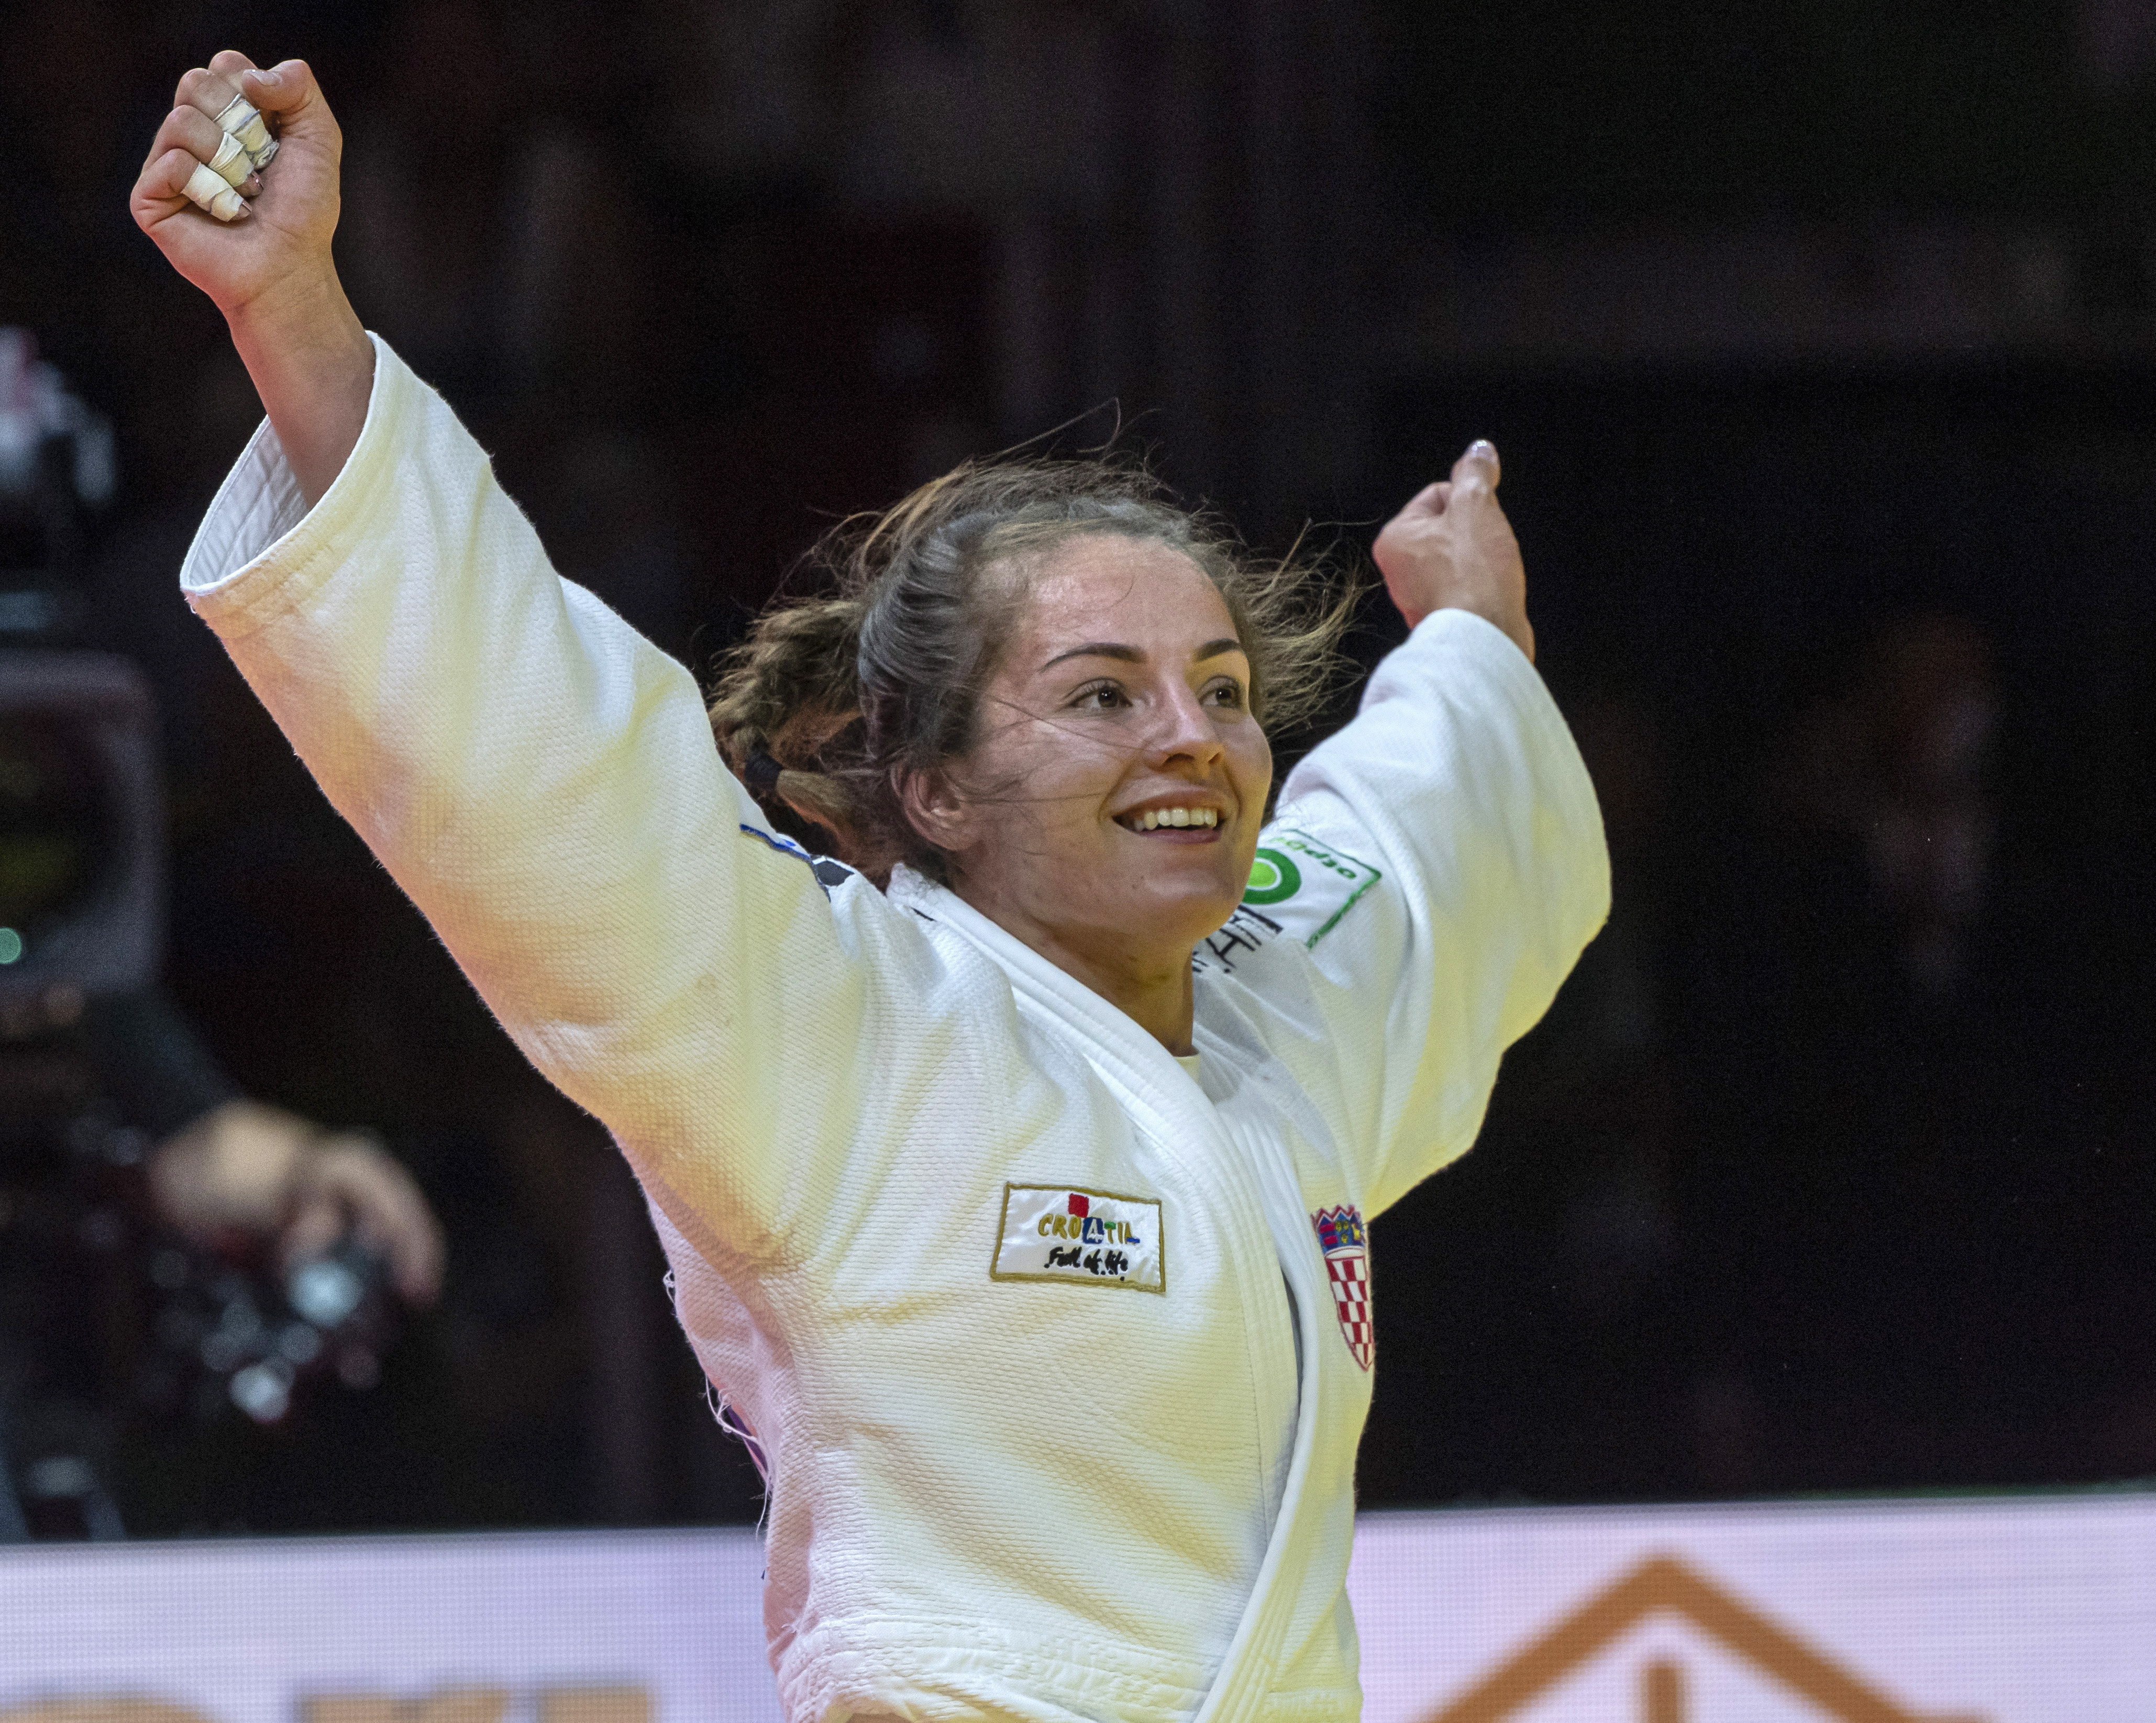 Judašici Barbara Matić osvojila zlato na svjetskom prvenstvu u judu u kategoriji do 70 kilograma u Budimpešti